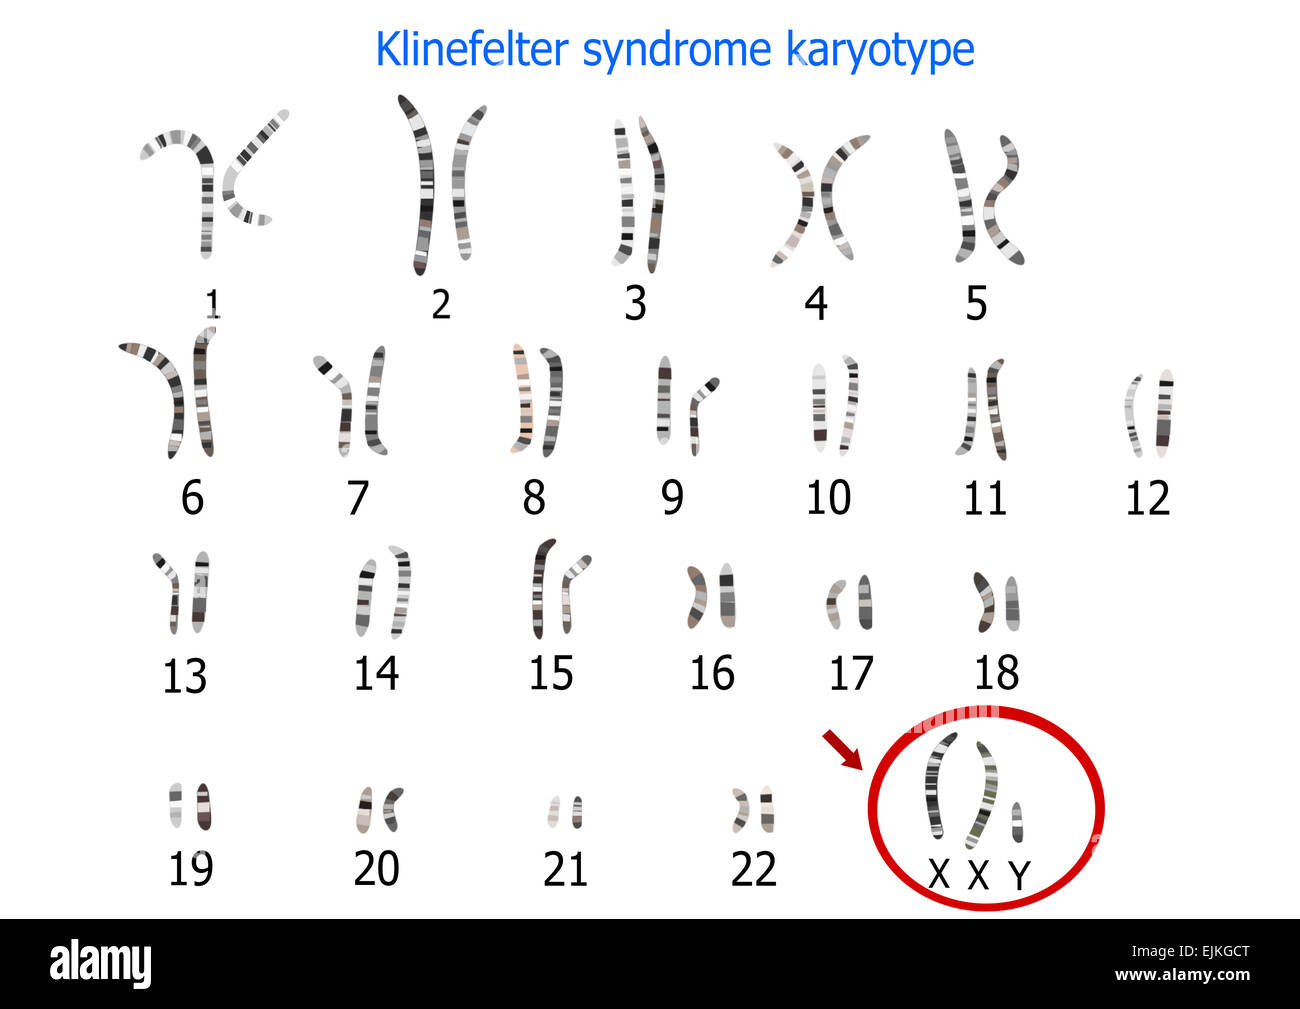 Klinefelter syndrome karyotype Stock Photo